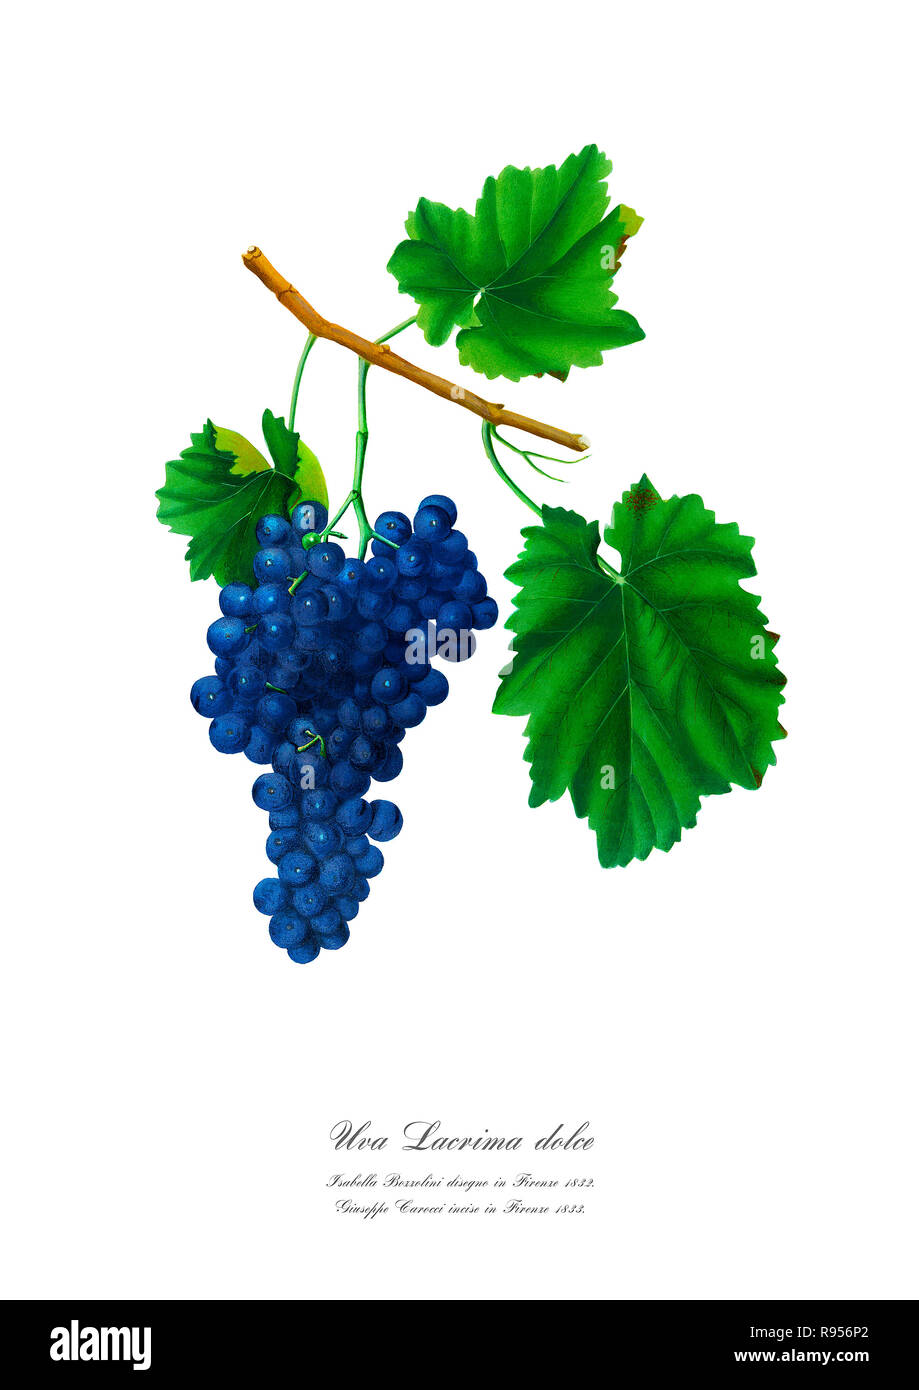 Vintage unique botanical illustration of a grape Stock Photo